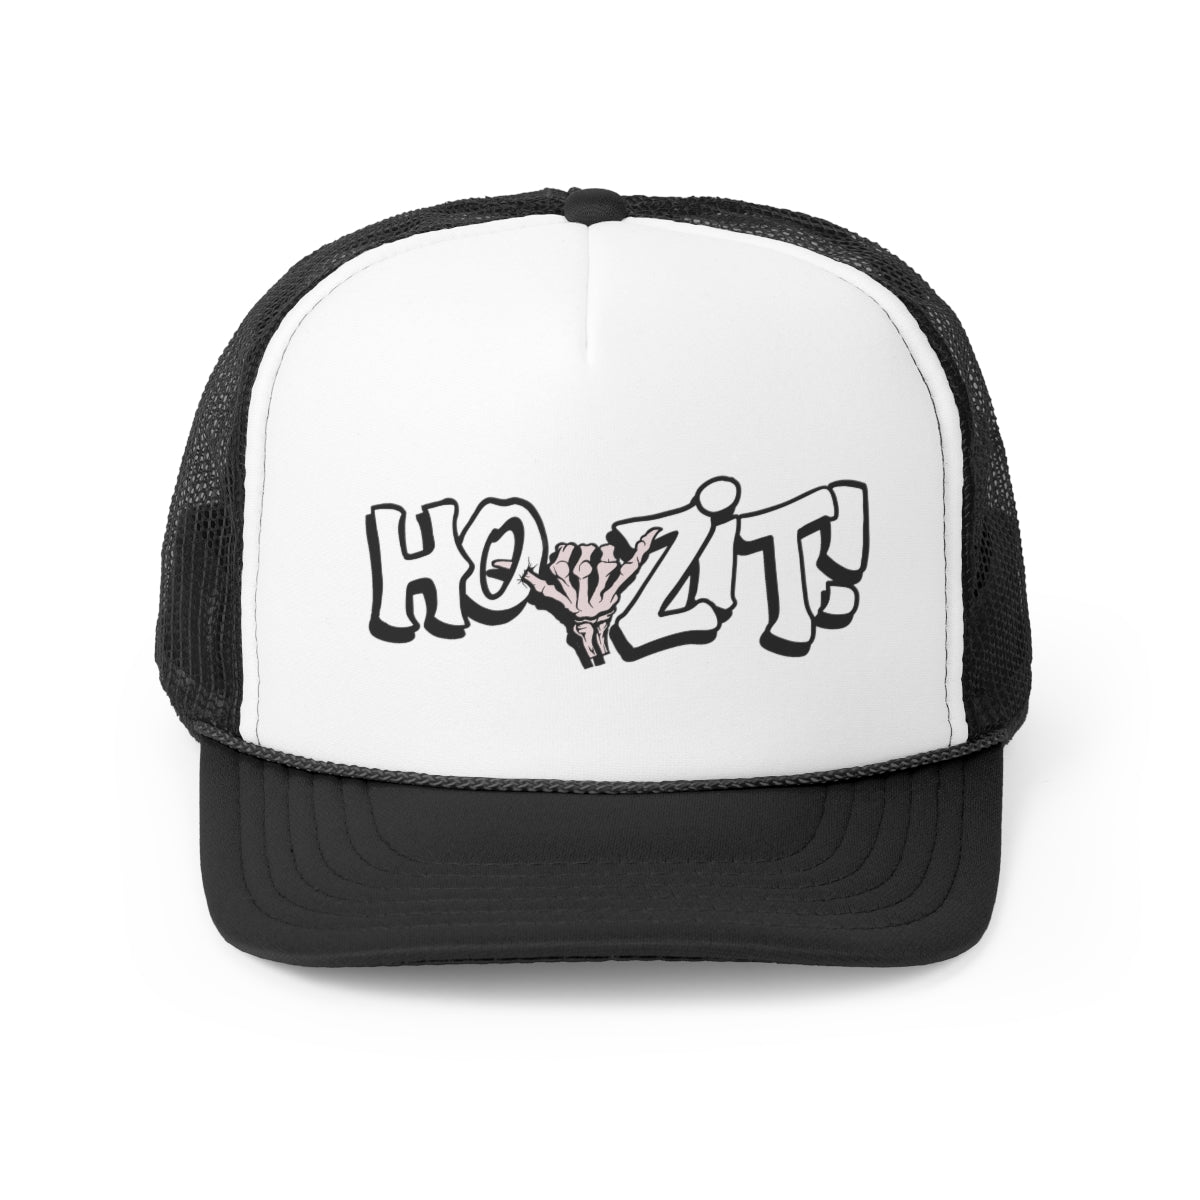 Howzit Skeleton Trucker Hat